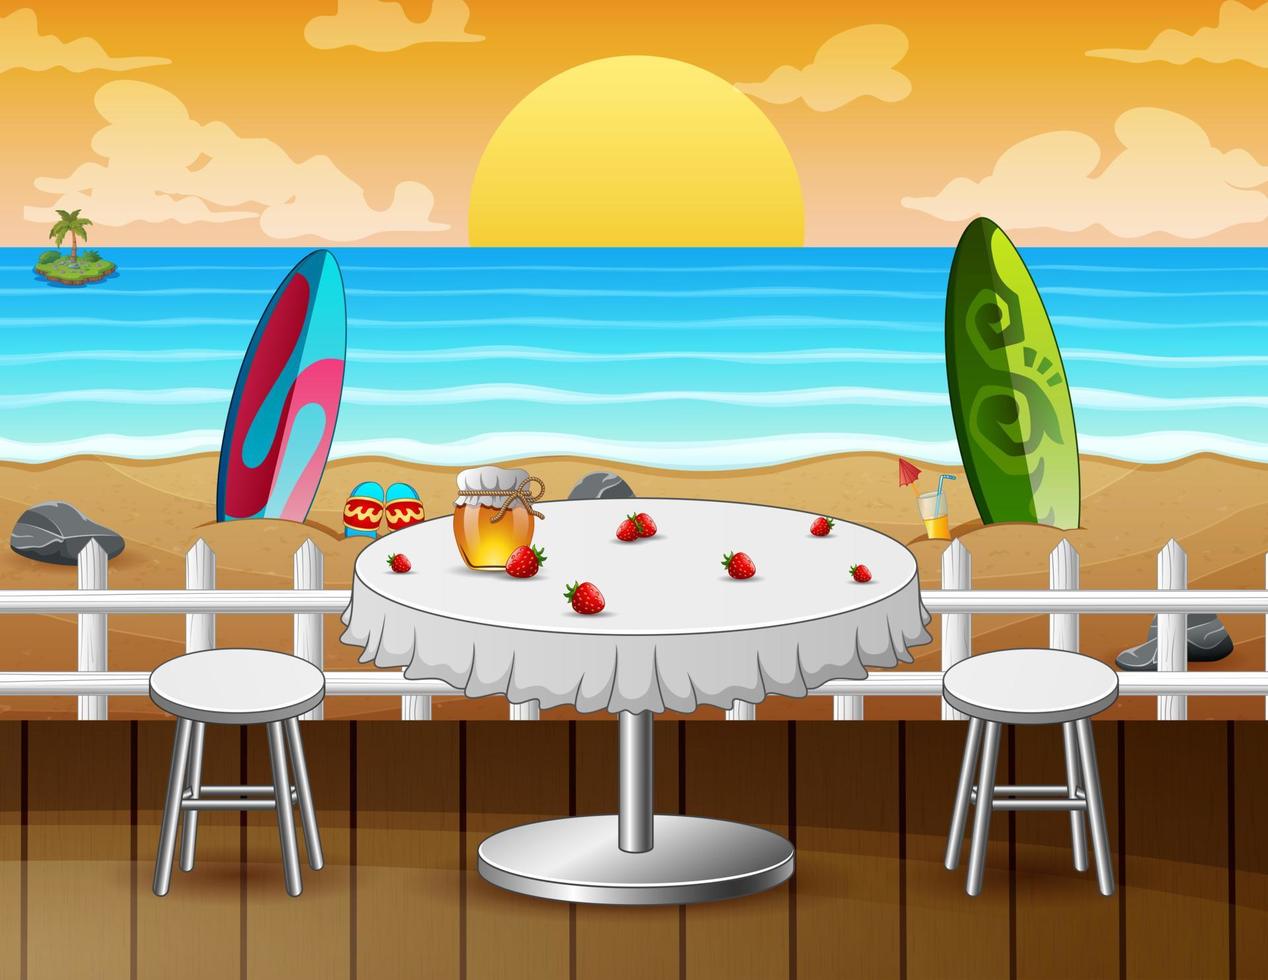 bord på stranden för en romantisk dejt vid havsbildsbakgrund vektor